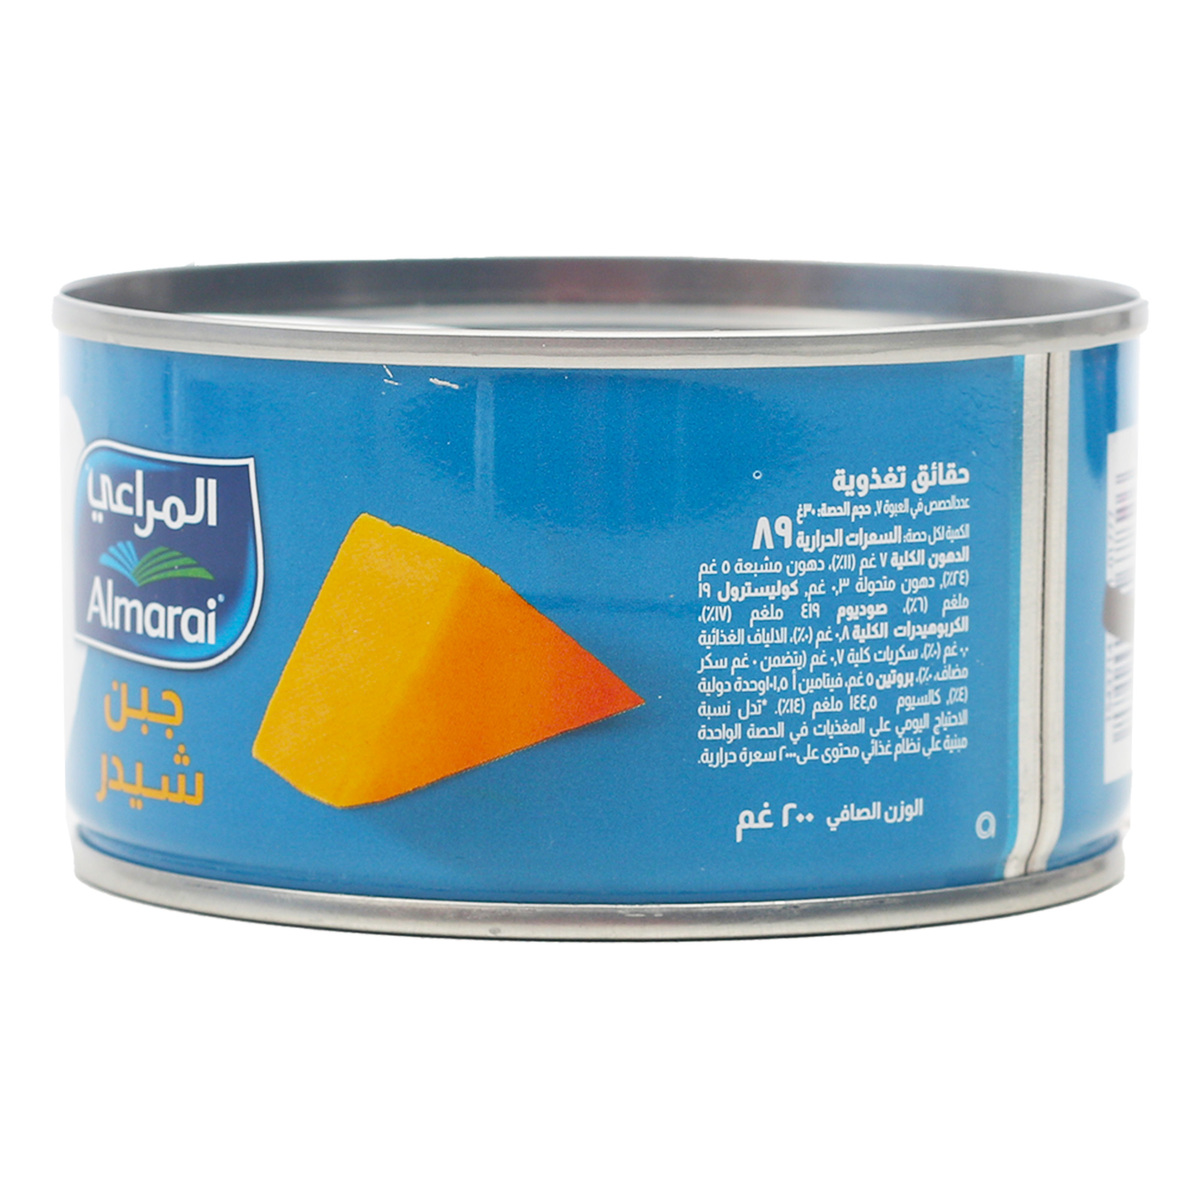 Almarai Cheddar Cheese Tin Value Pack 2 x 200 g